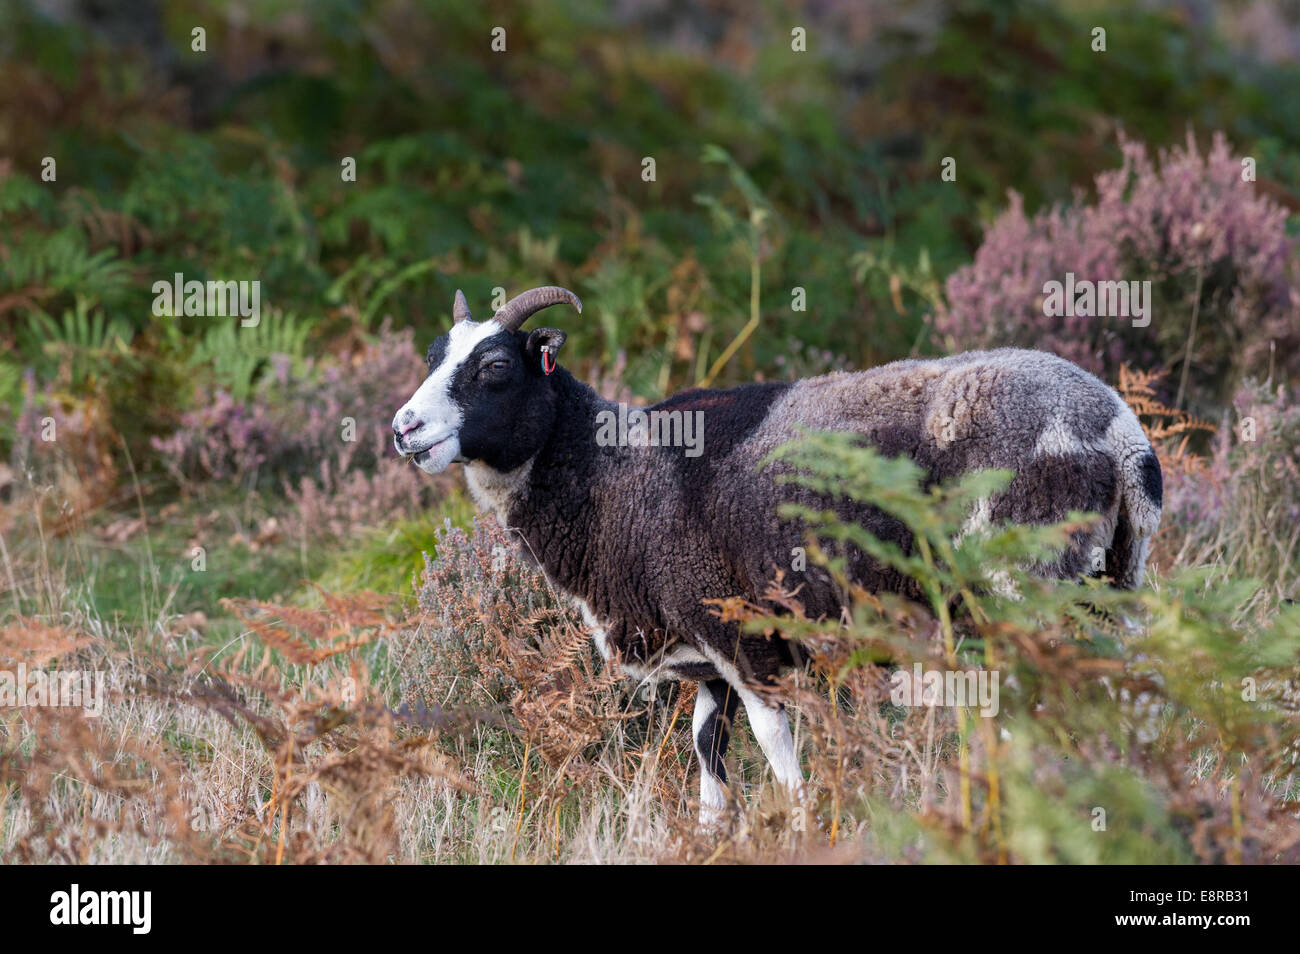 Le mouton de Jacob qui est une ancienne race d'ovins à être introduit dans la lande de maintenir ce milieu naturel. Banque D'Images